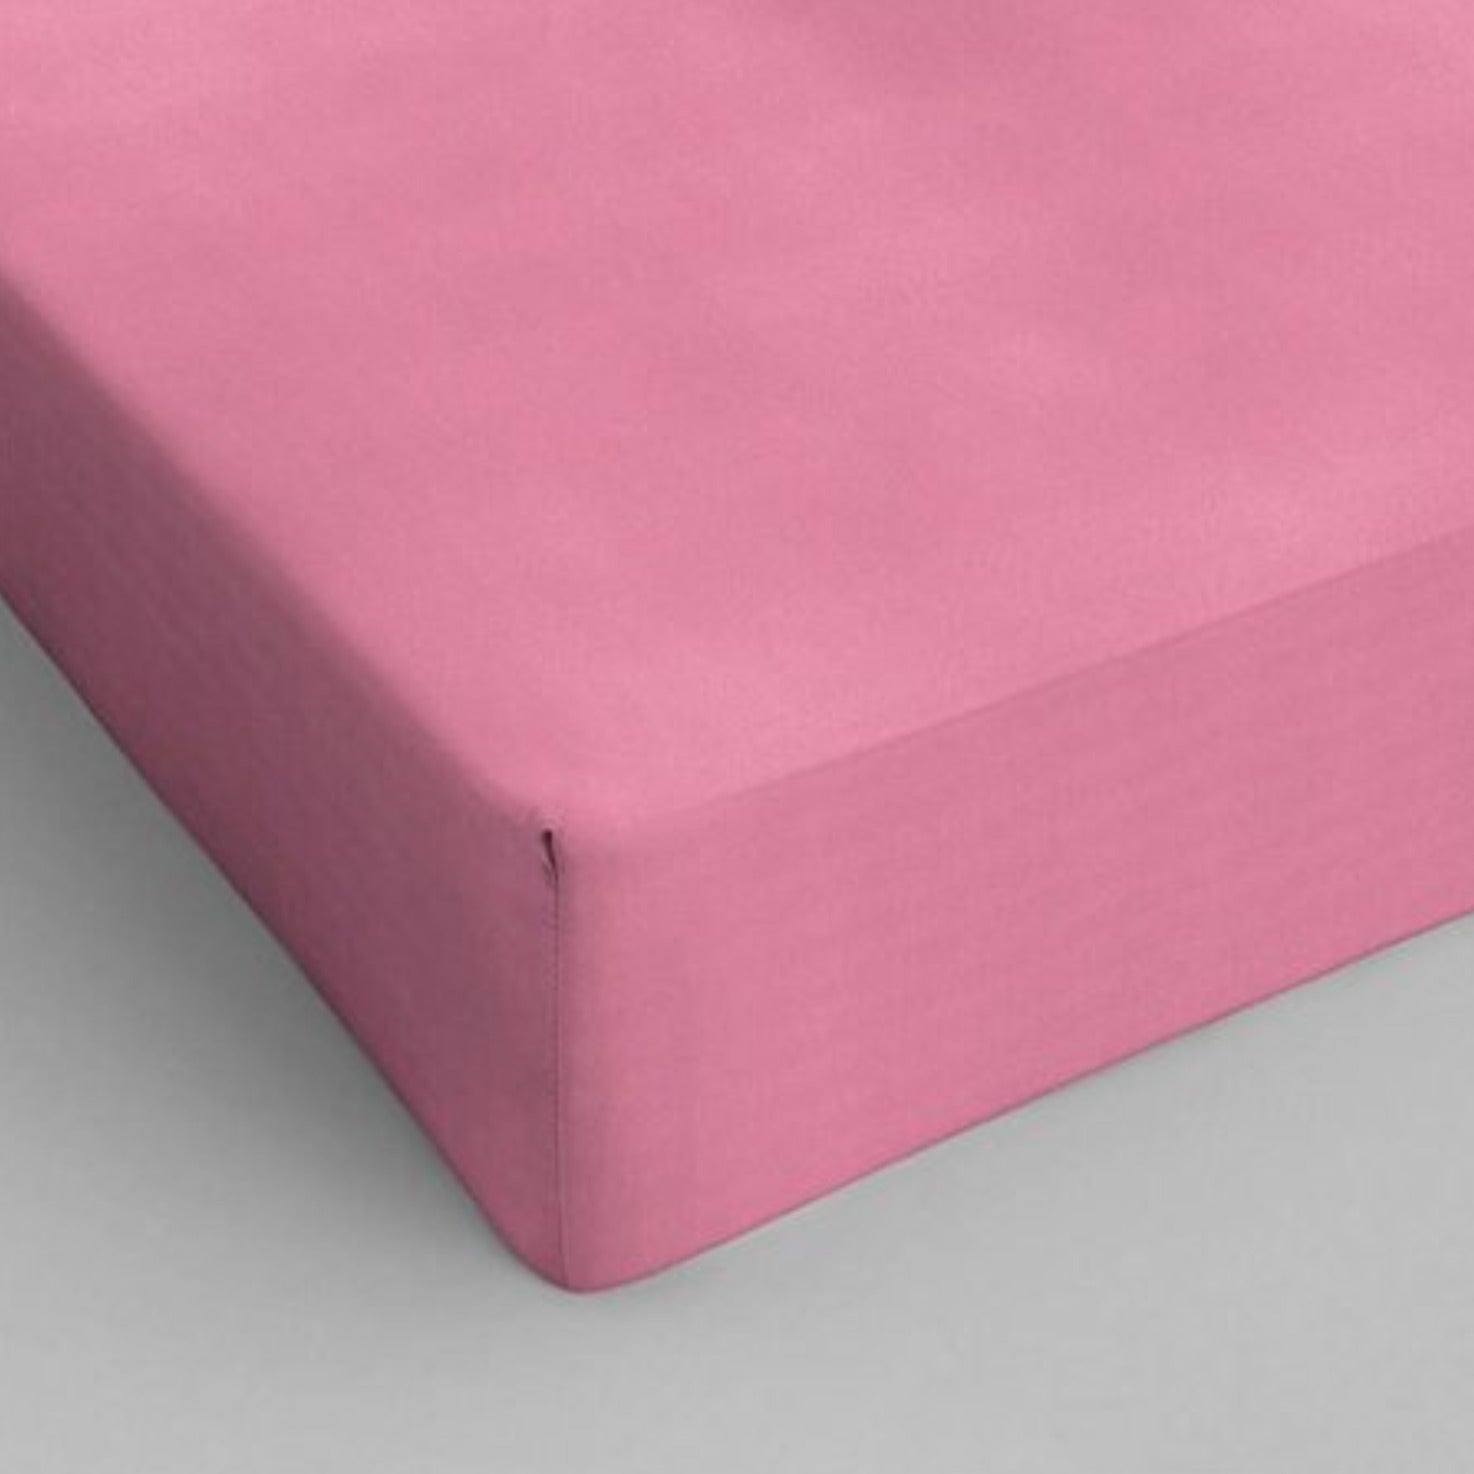 Stræklagen i bomuld pink 160 x 220